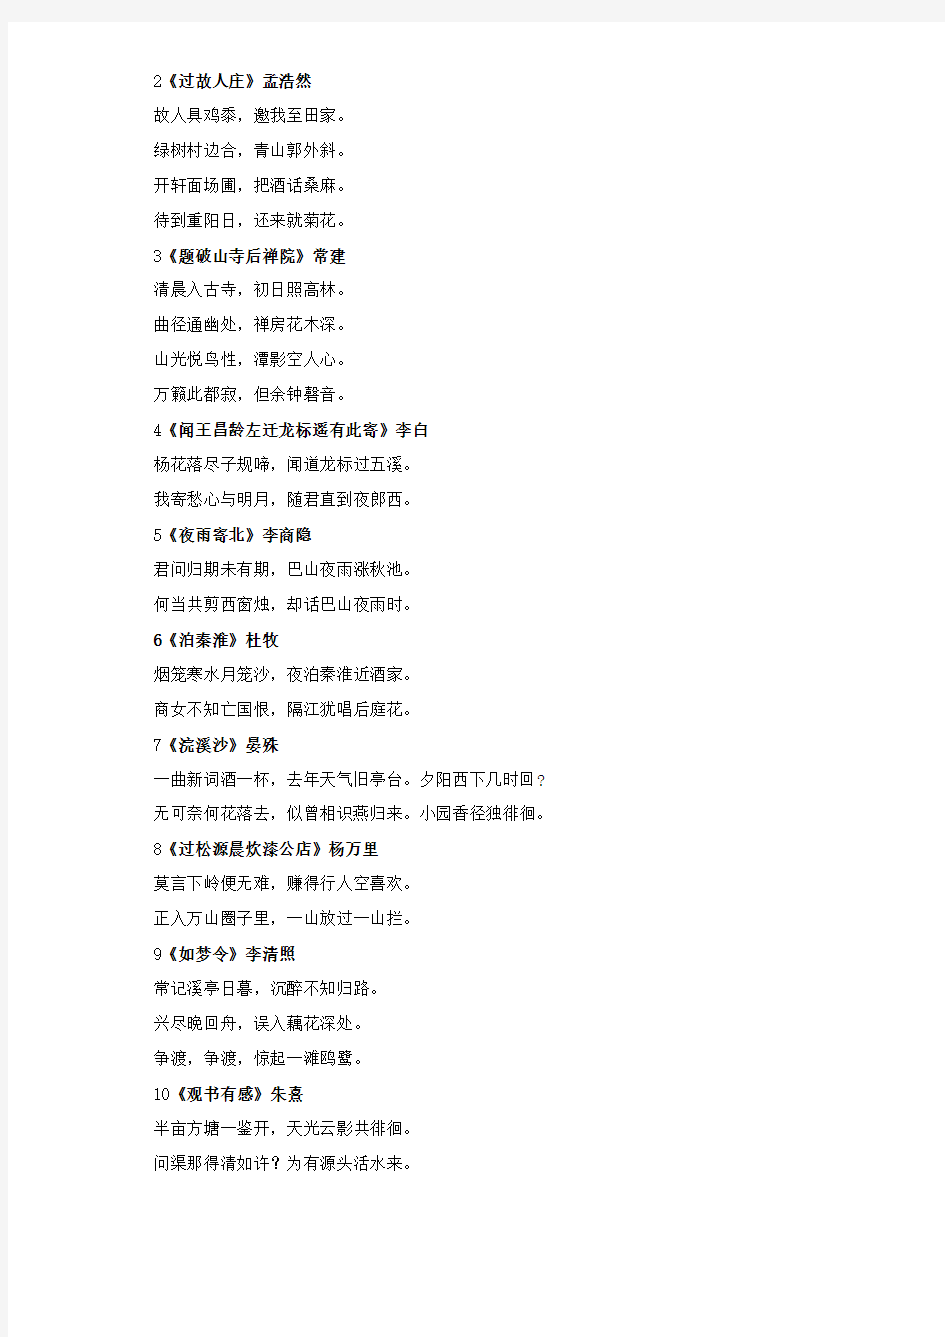 人教版初中语文课本古诗词背诵篇目 整理